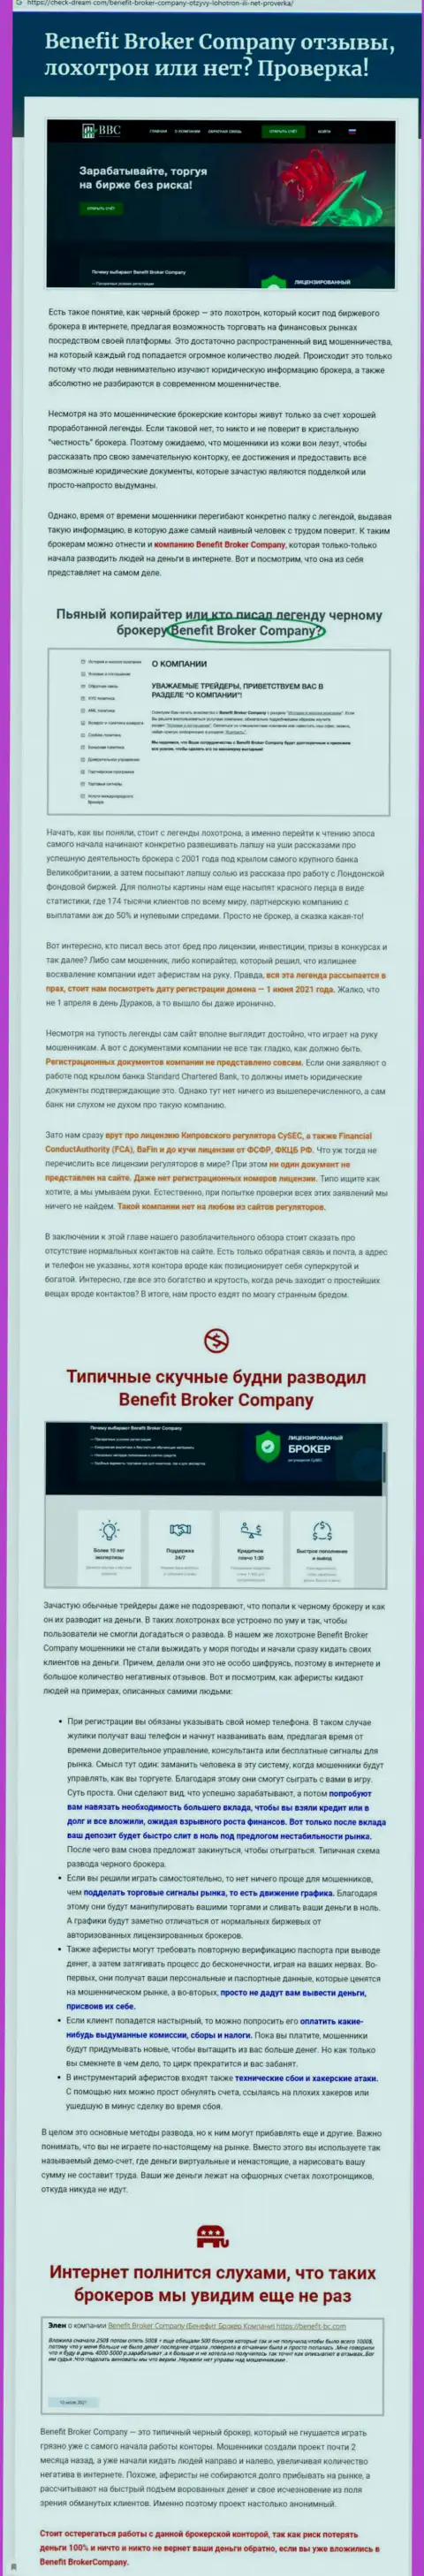 Стоит ли взаимодействовать с конторой Benefit Broker Company ? (Обзор мошенничества организации)